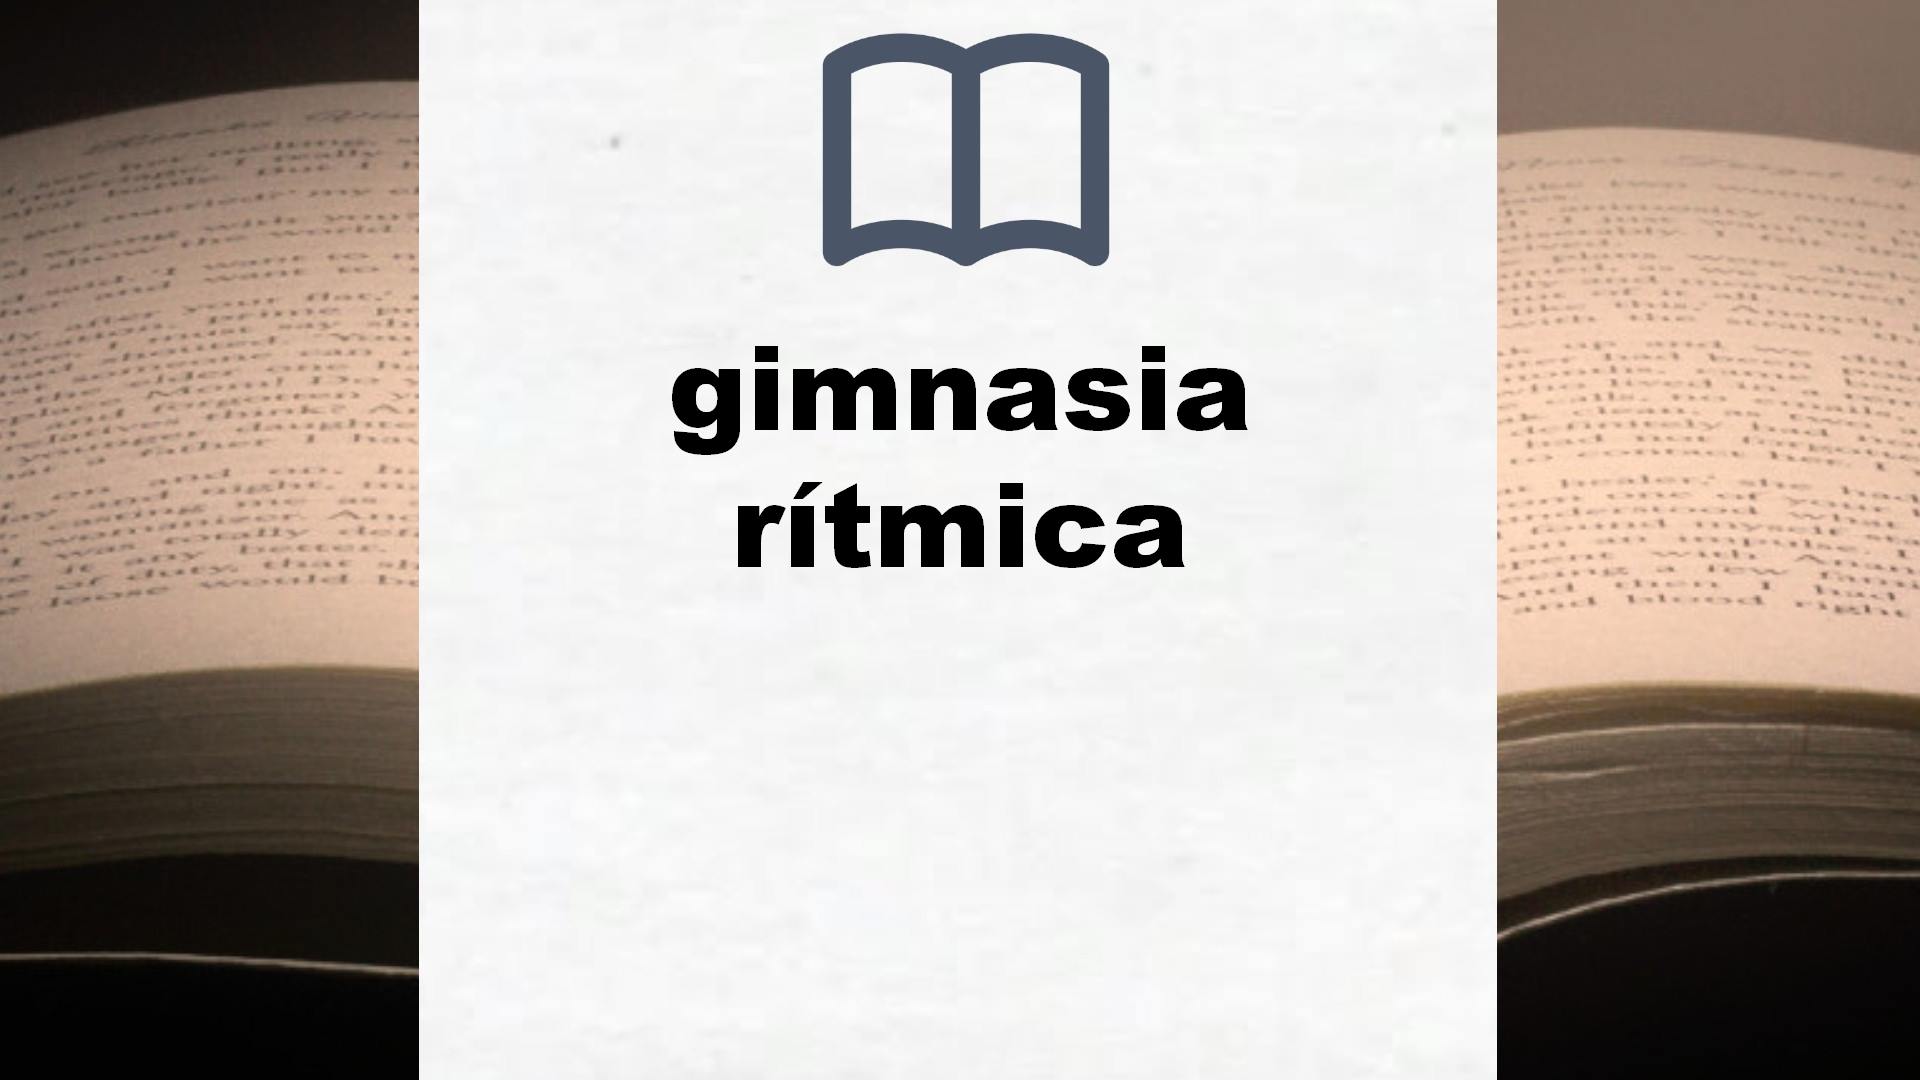 Libros sobre gimnasia rítmica